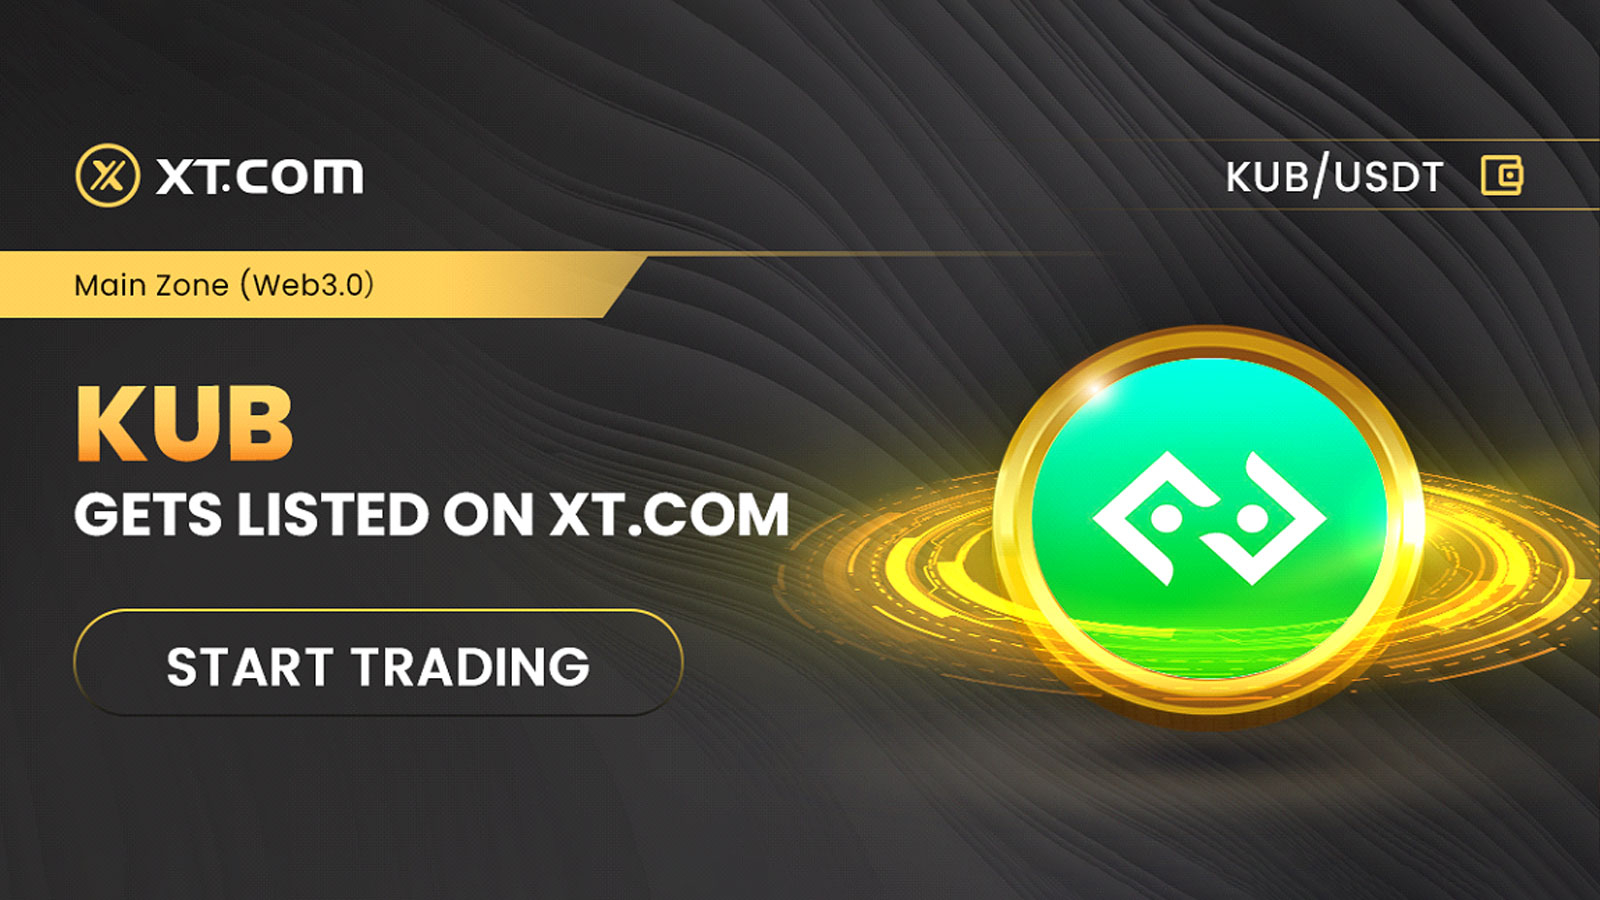 XT.COM Lists KUB in Its Main Zone